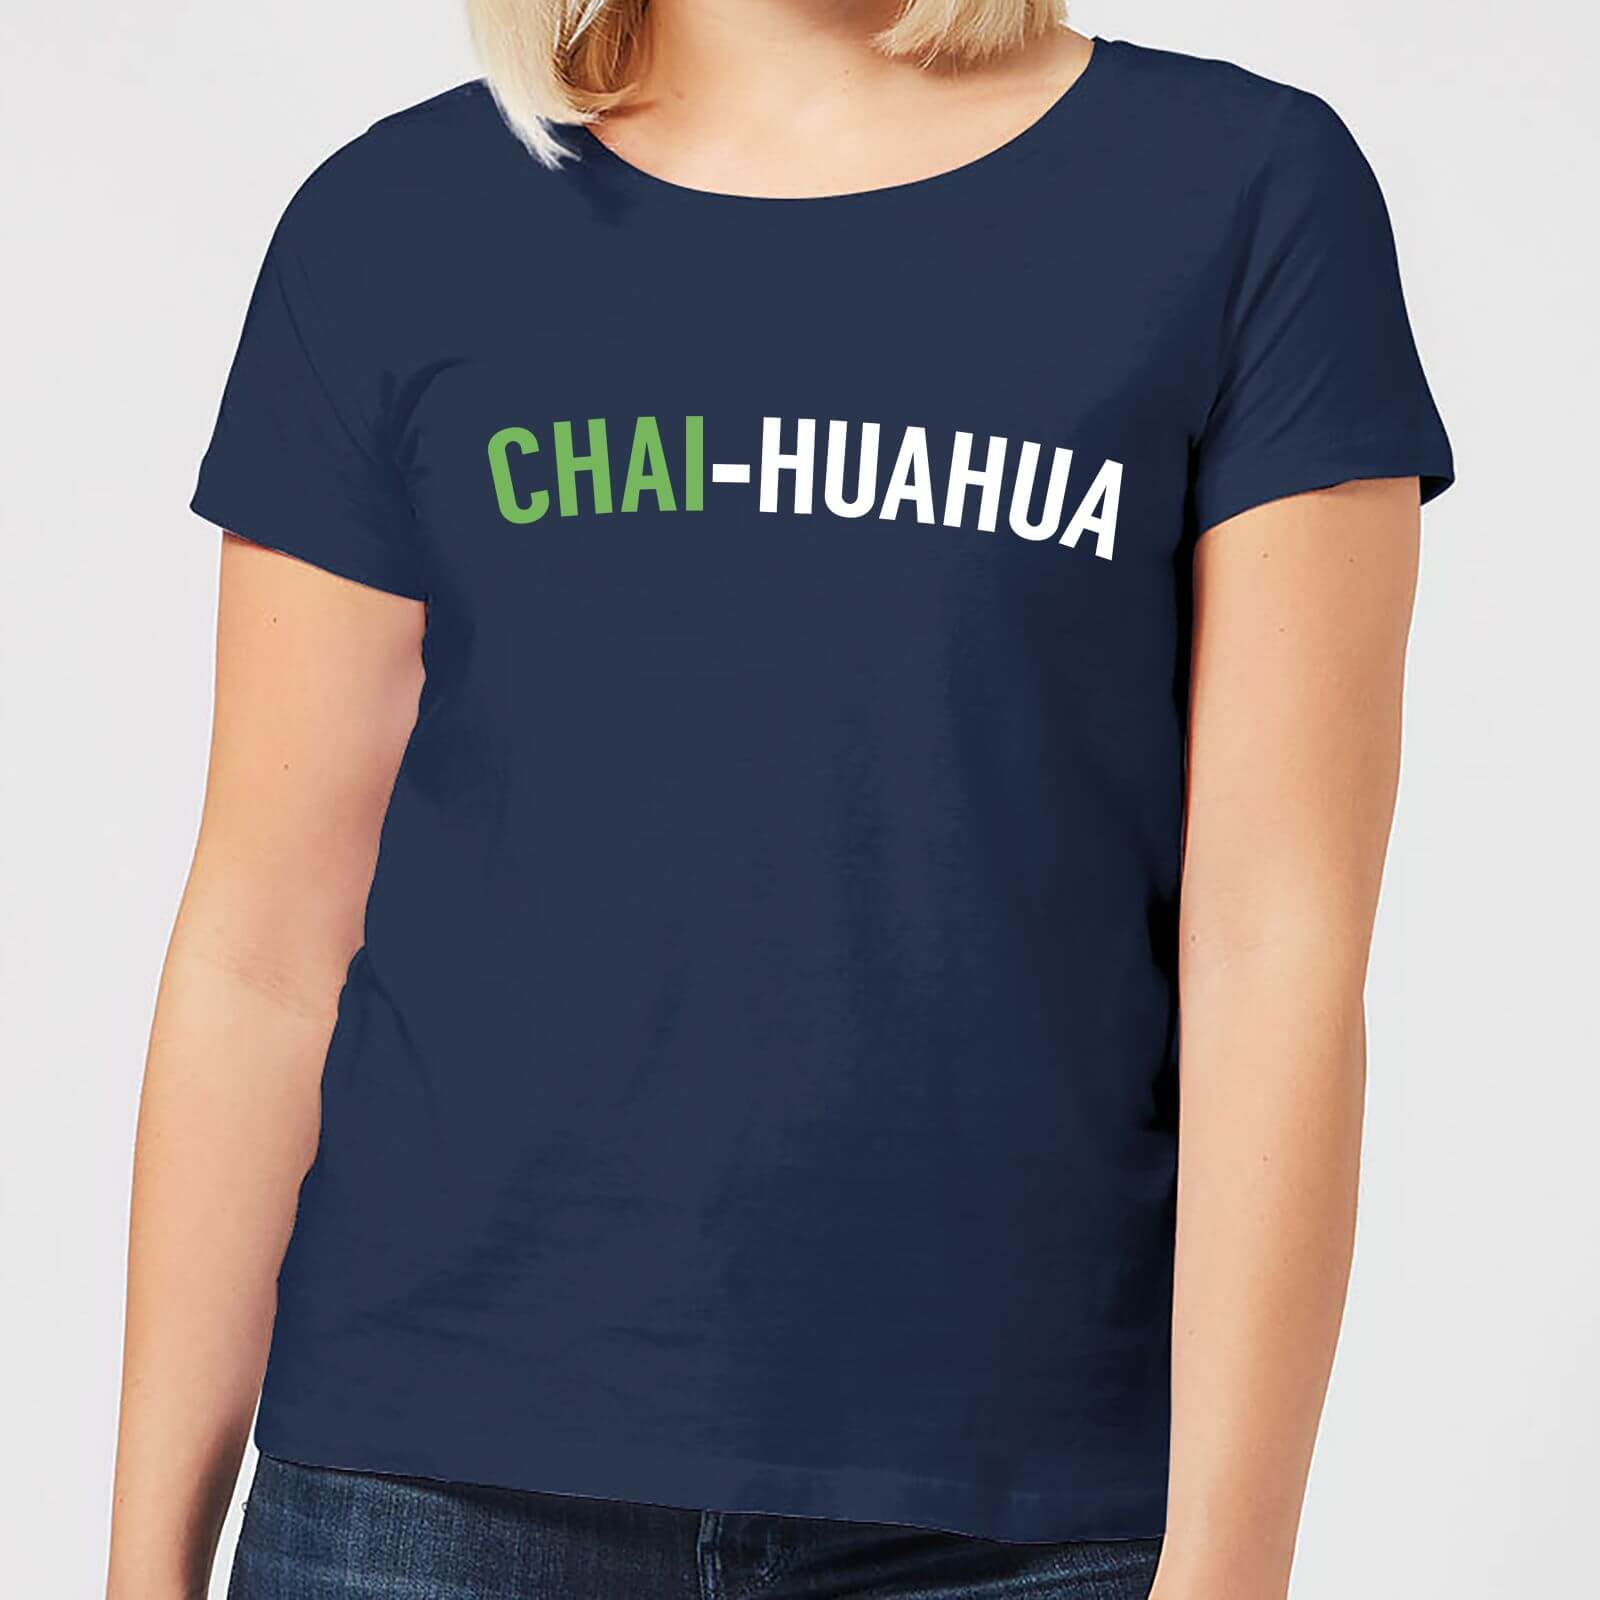 Chai-huahua Women's T-Shirt - Navy - S - Navy